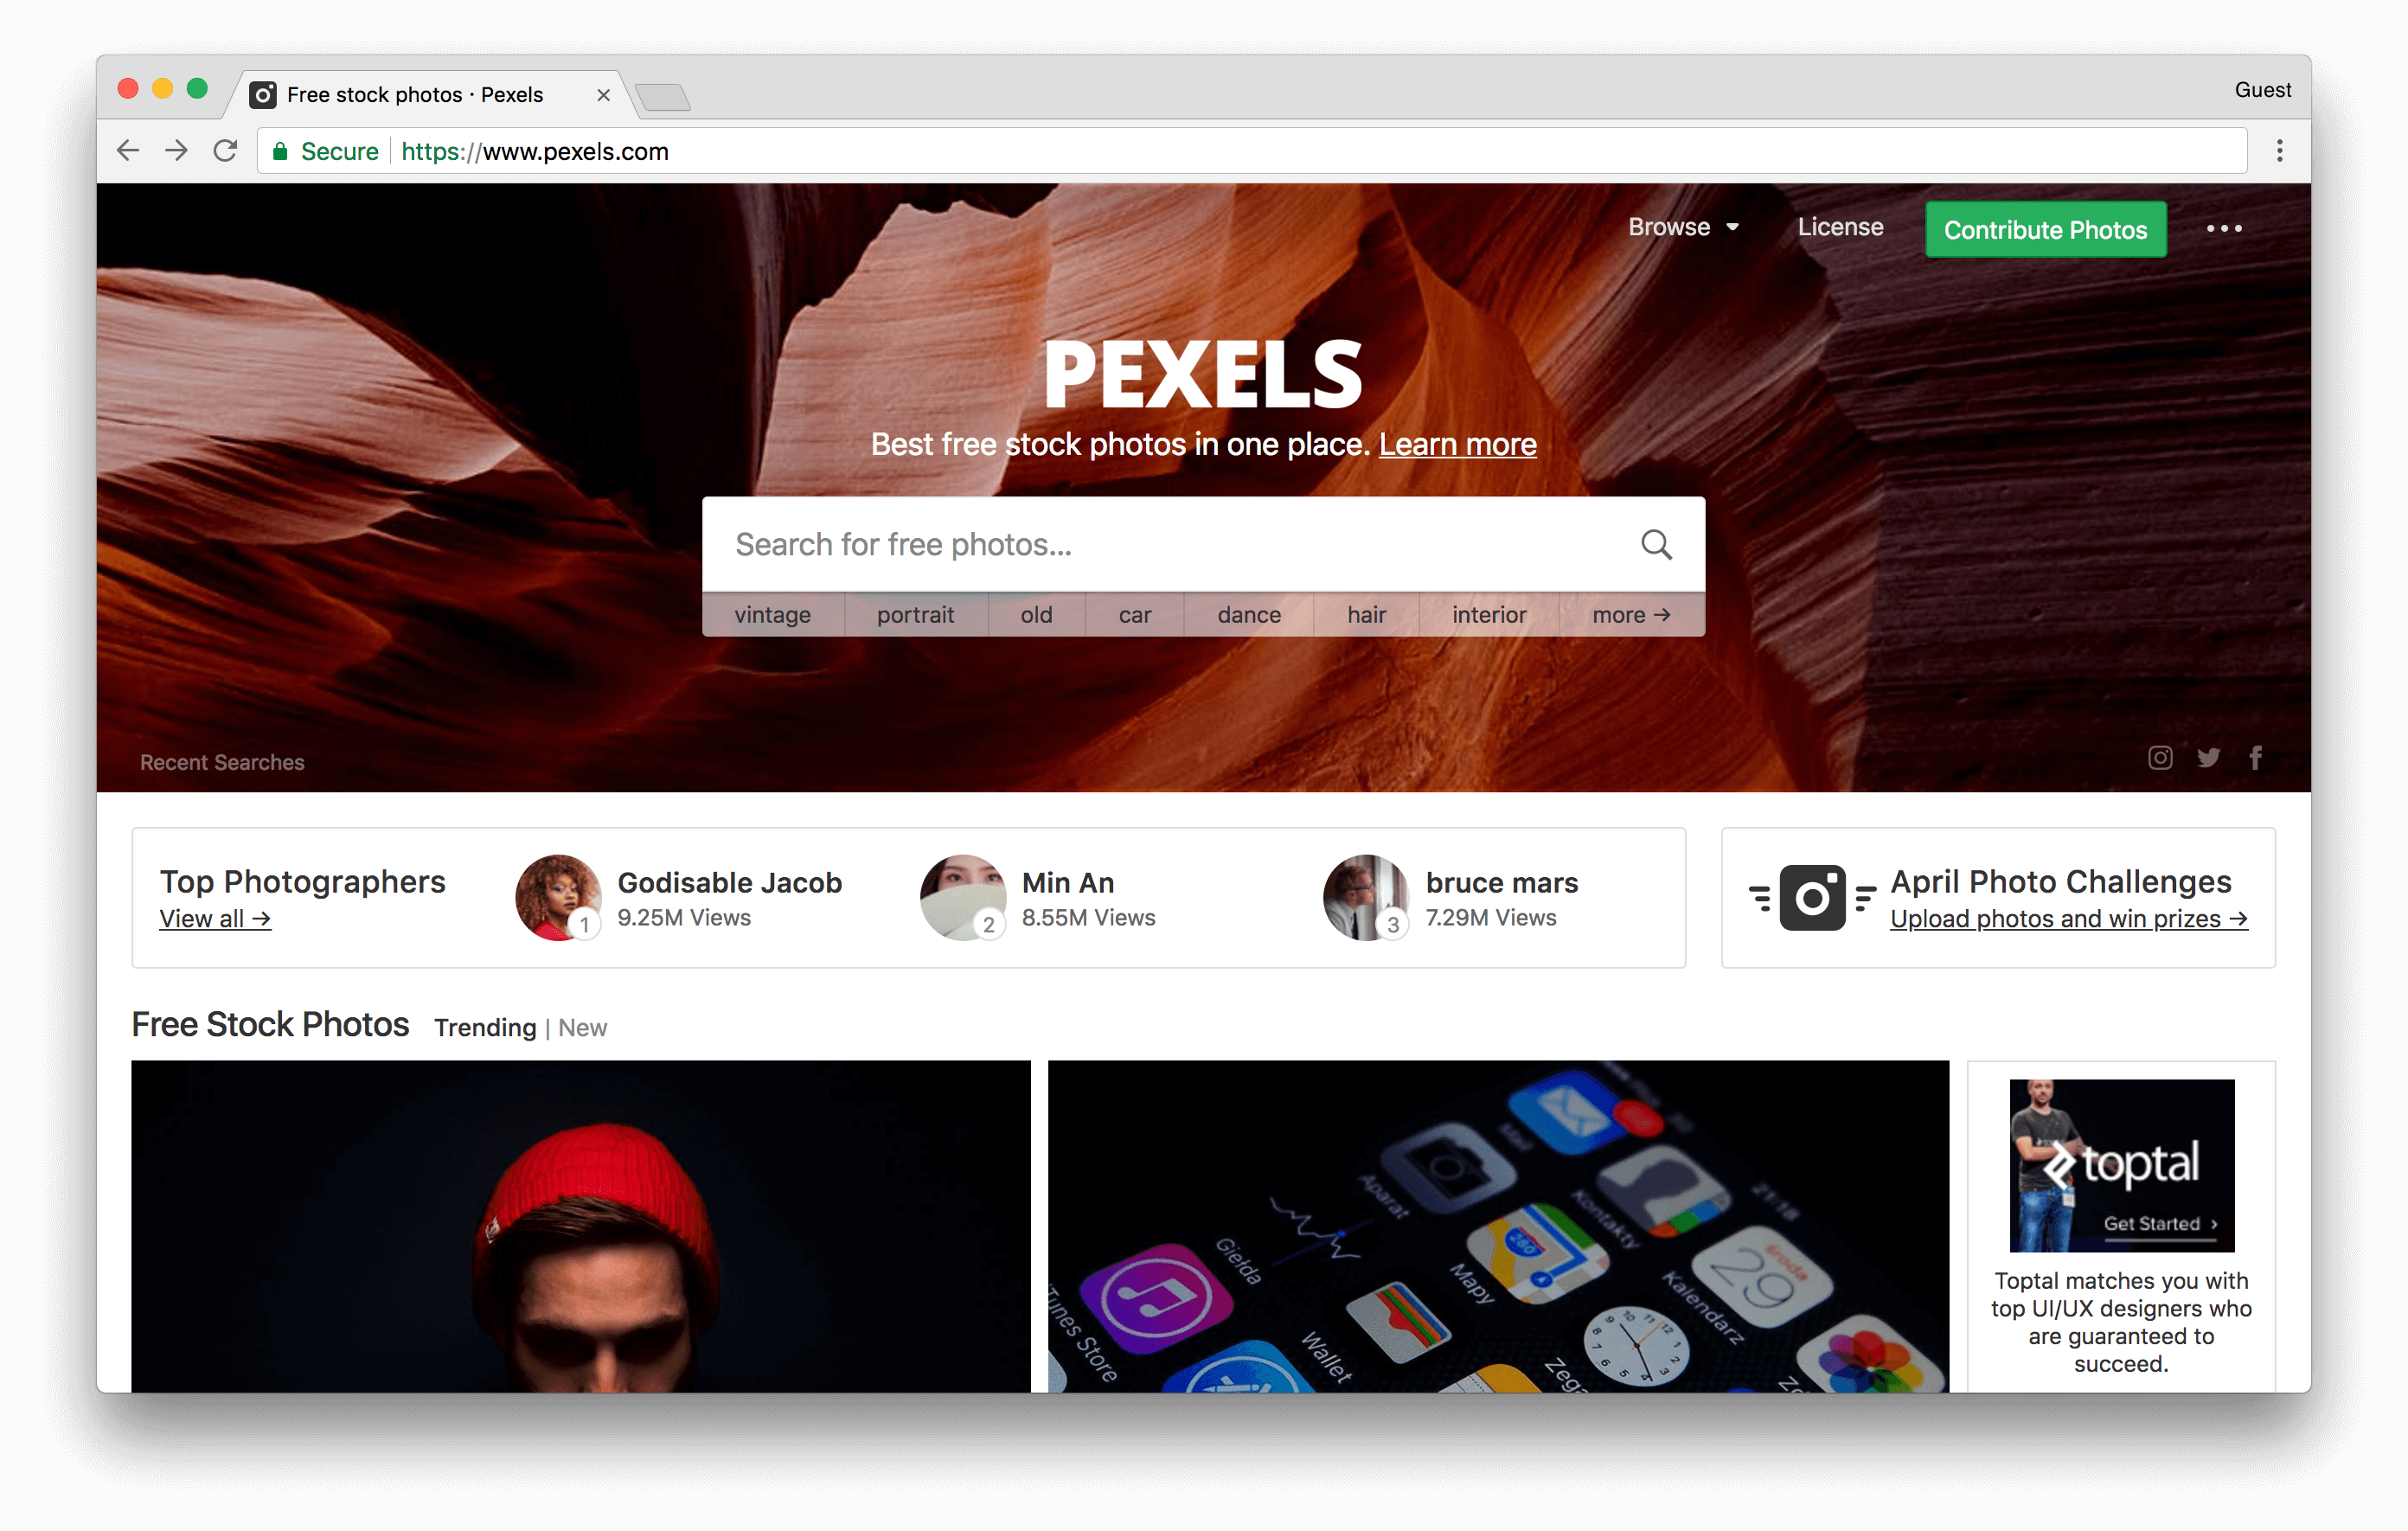 pexels.com